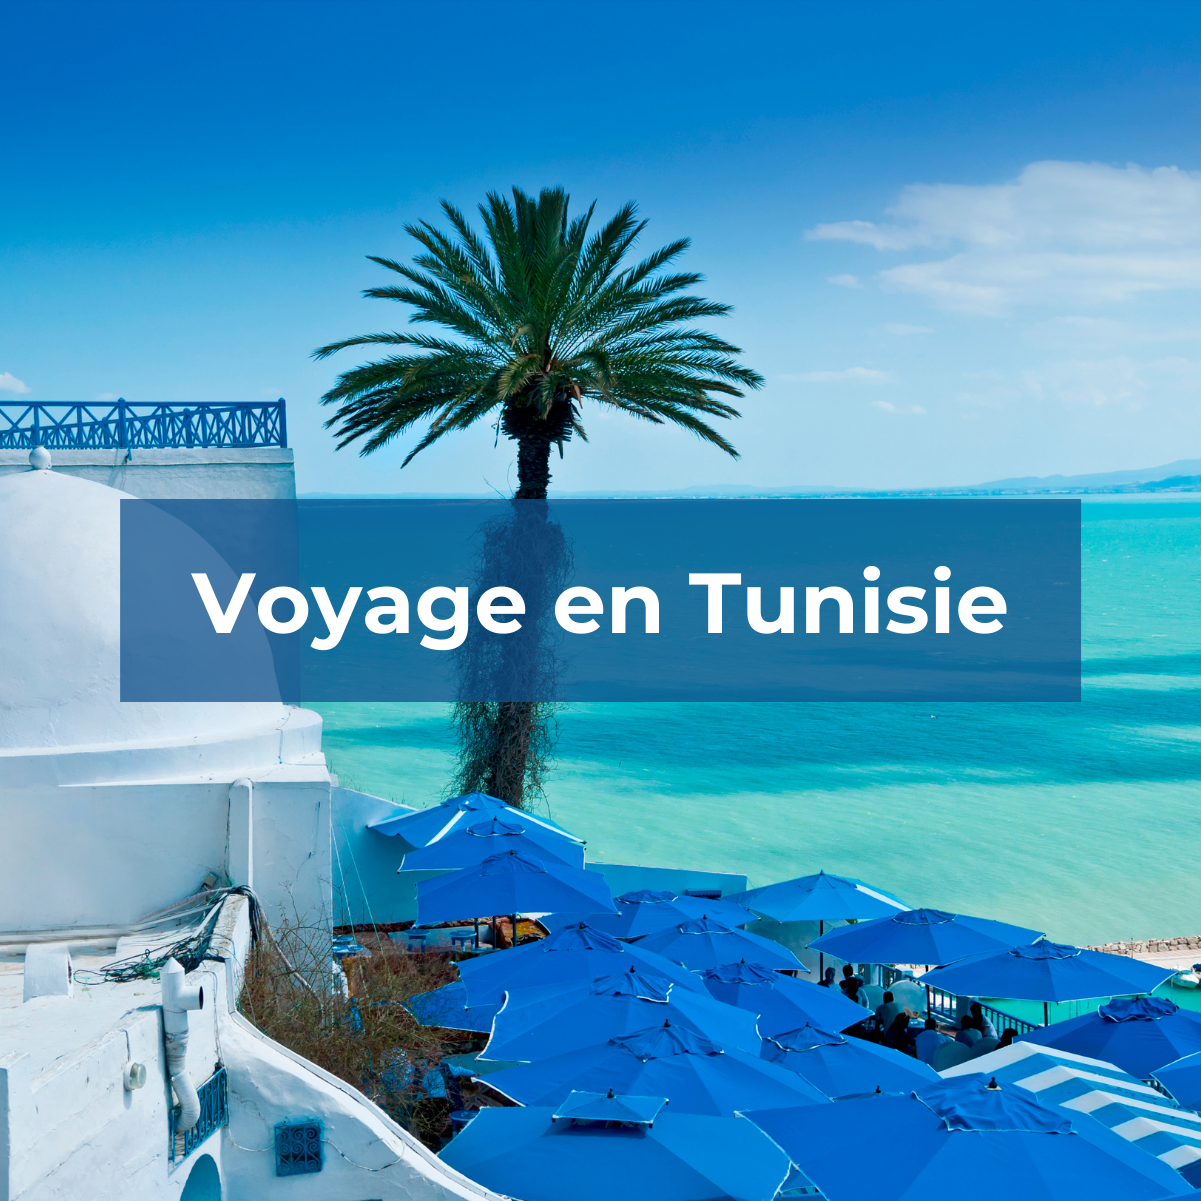 Voyage en Tunisie top 10 à visiter - Vagabondeuse blogue voyage